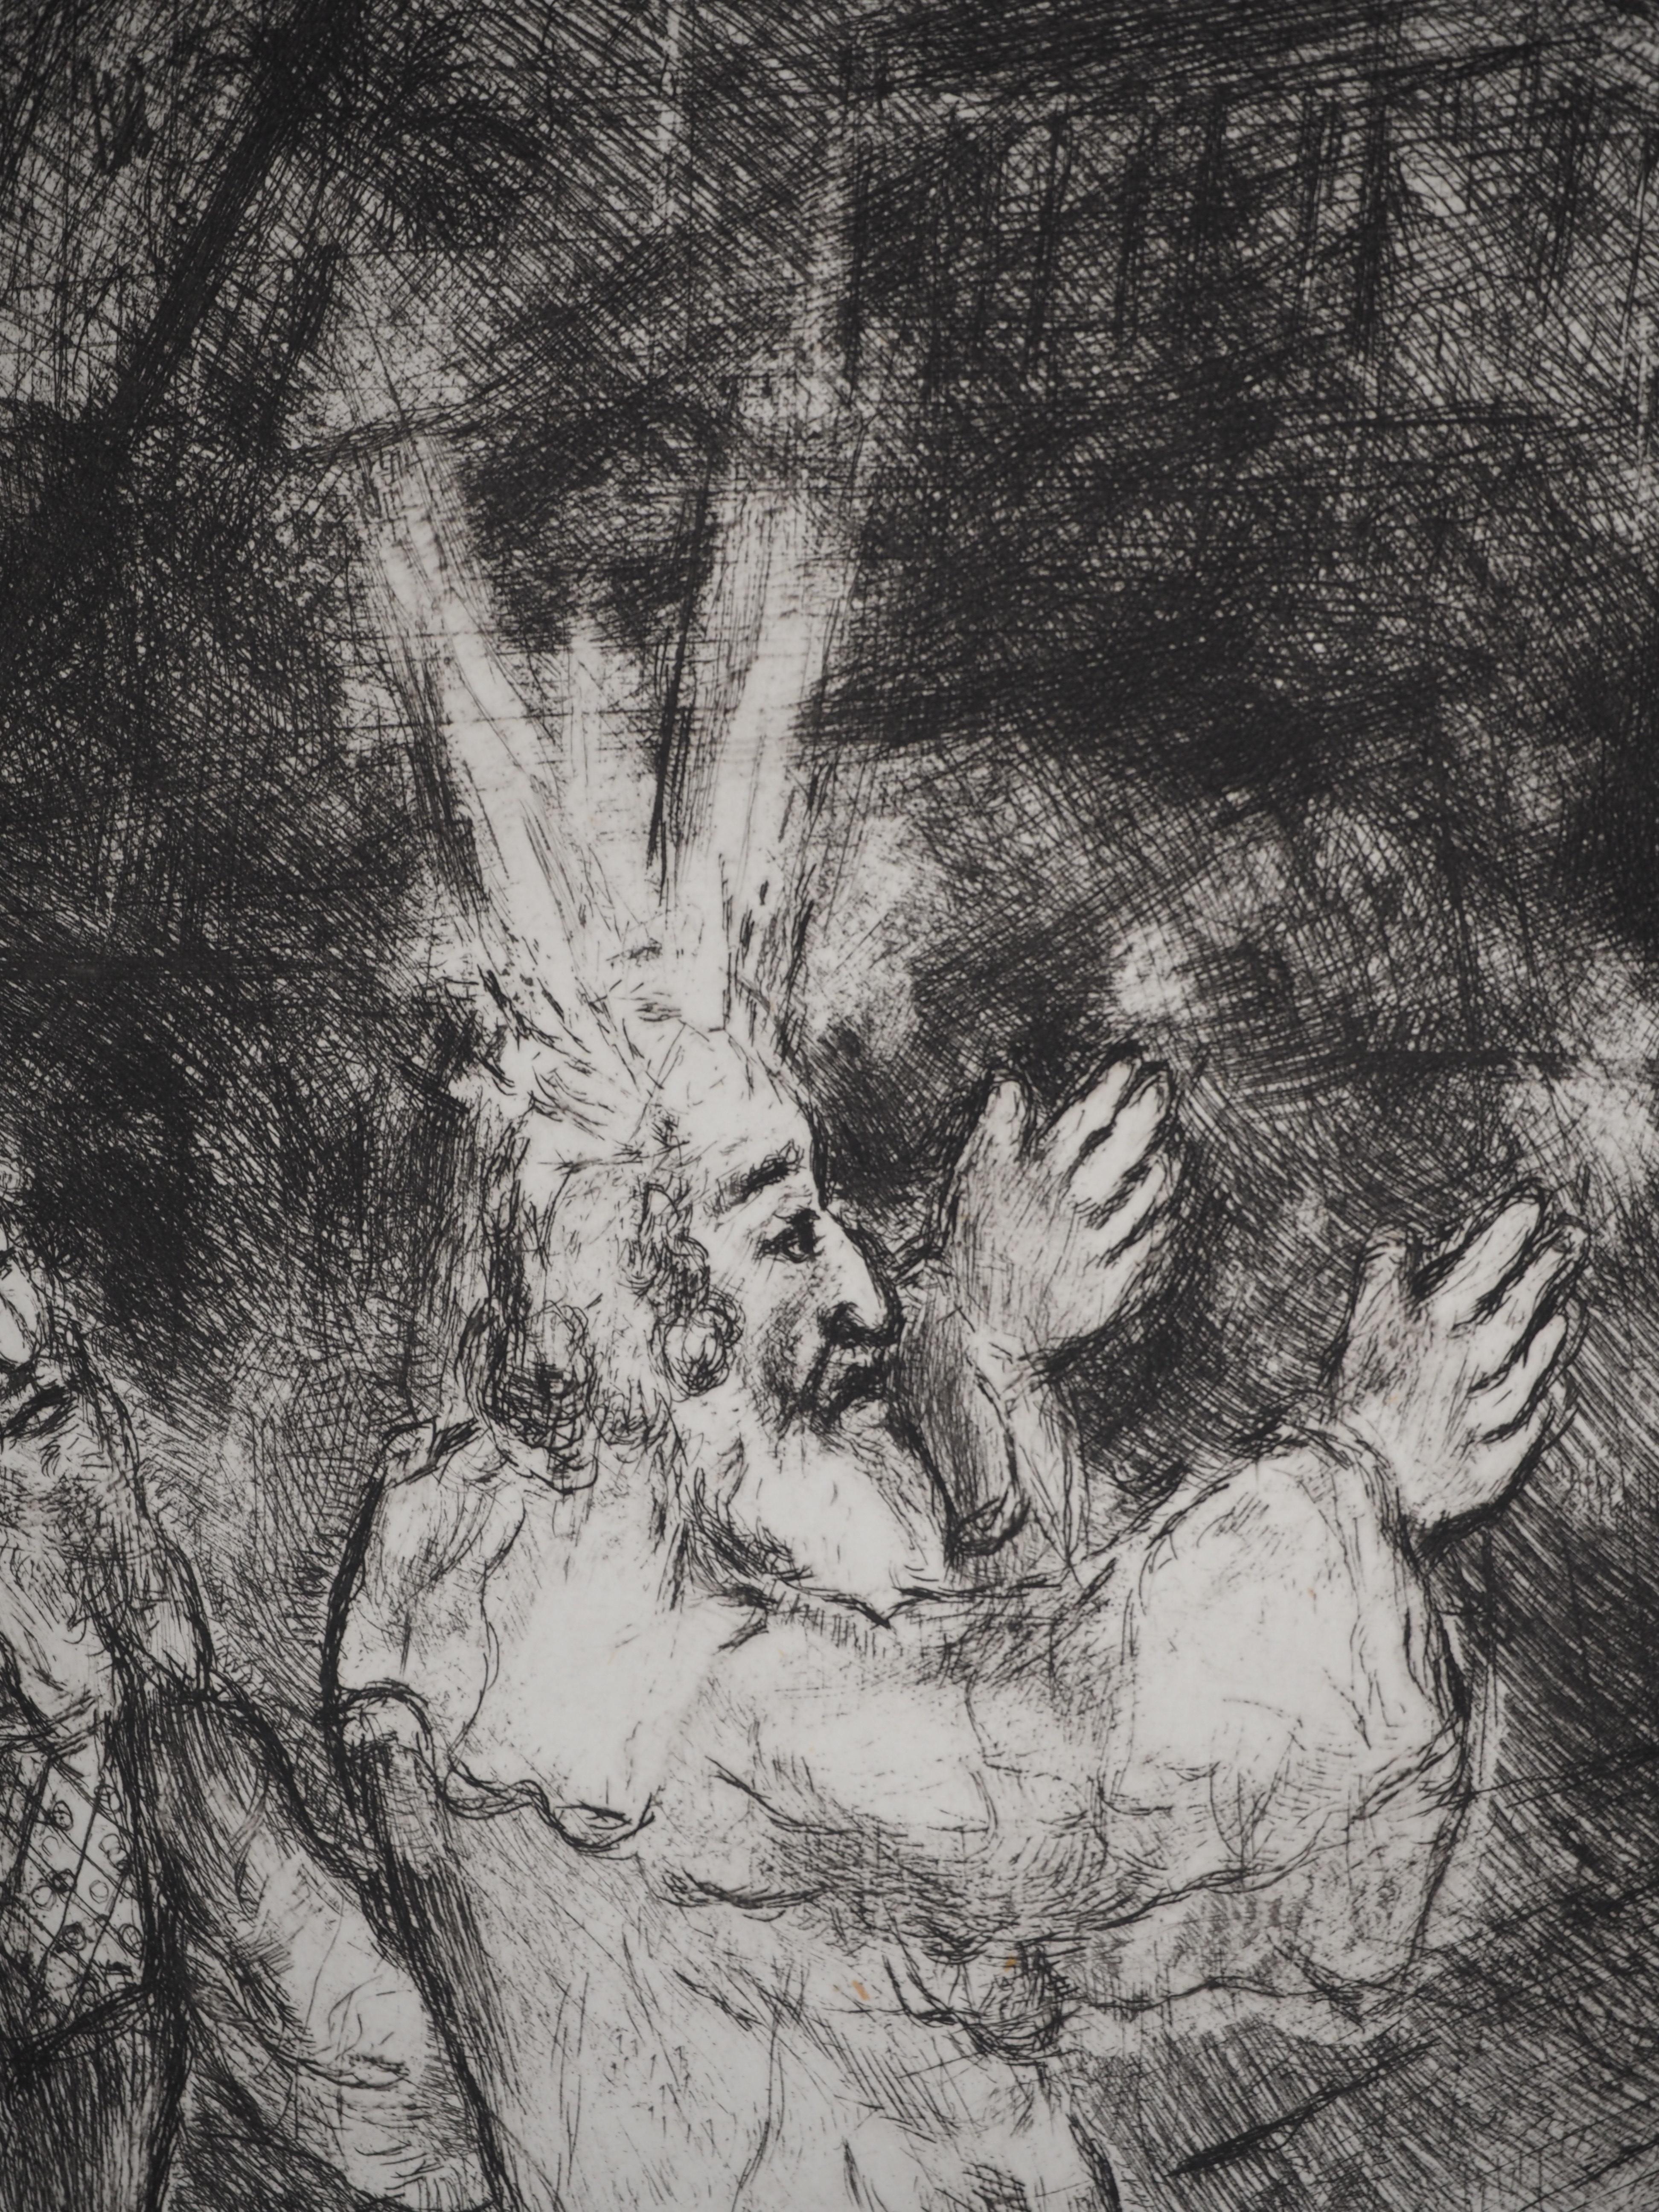 Marc Chagall (1887-1958)
Bibel : Moses und Aaron mit dem Pharao (Moïse et Aaron devant Pharaon), 1939

Original-Radierung
Nicht unterzeichnet
Auf Montval Vellum, 44 x 33,5 cm (ca. 17,3 x 13,1 inch)

INFORMATION: Veröffentlicht von Vollard / Tériade